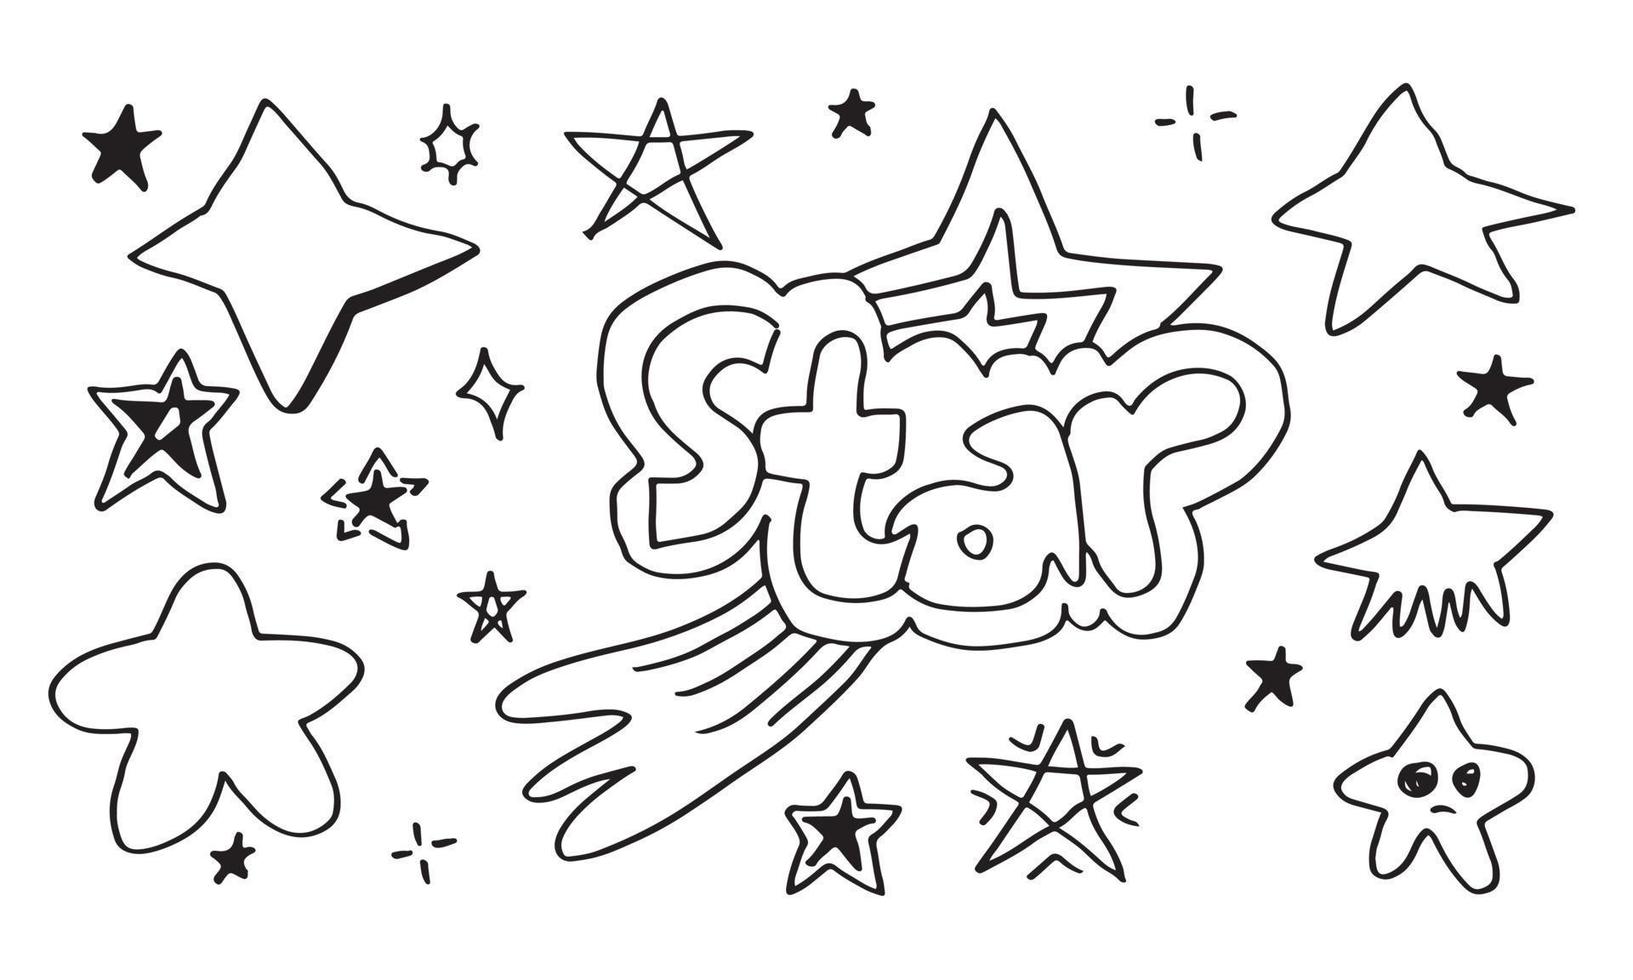 handgezeichnete sterne gesetzt. Stern kritzelt Sammlung auf weißem Hintergrund. vektor